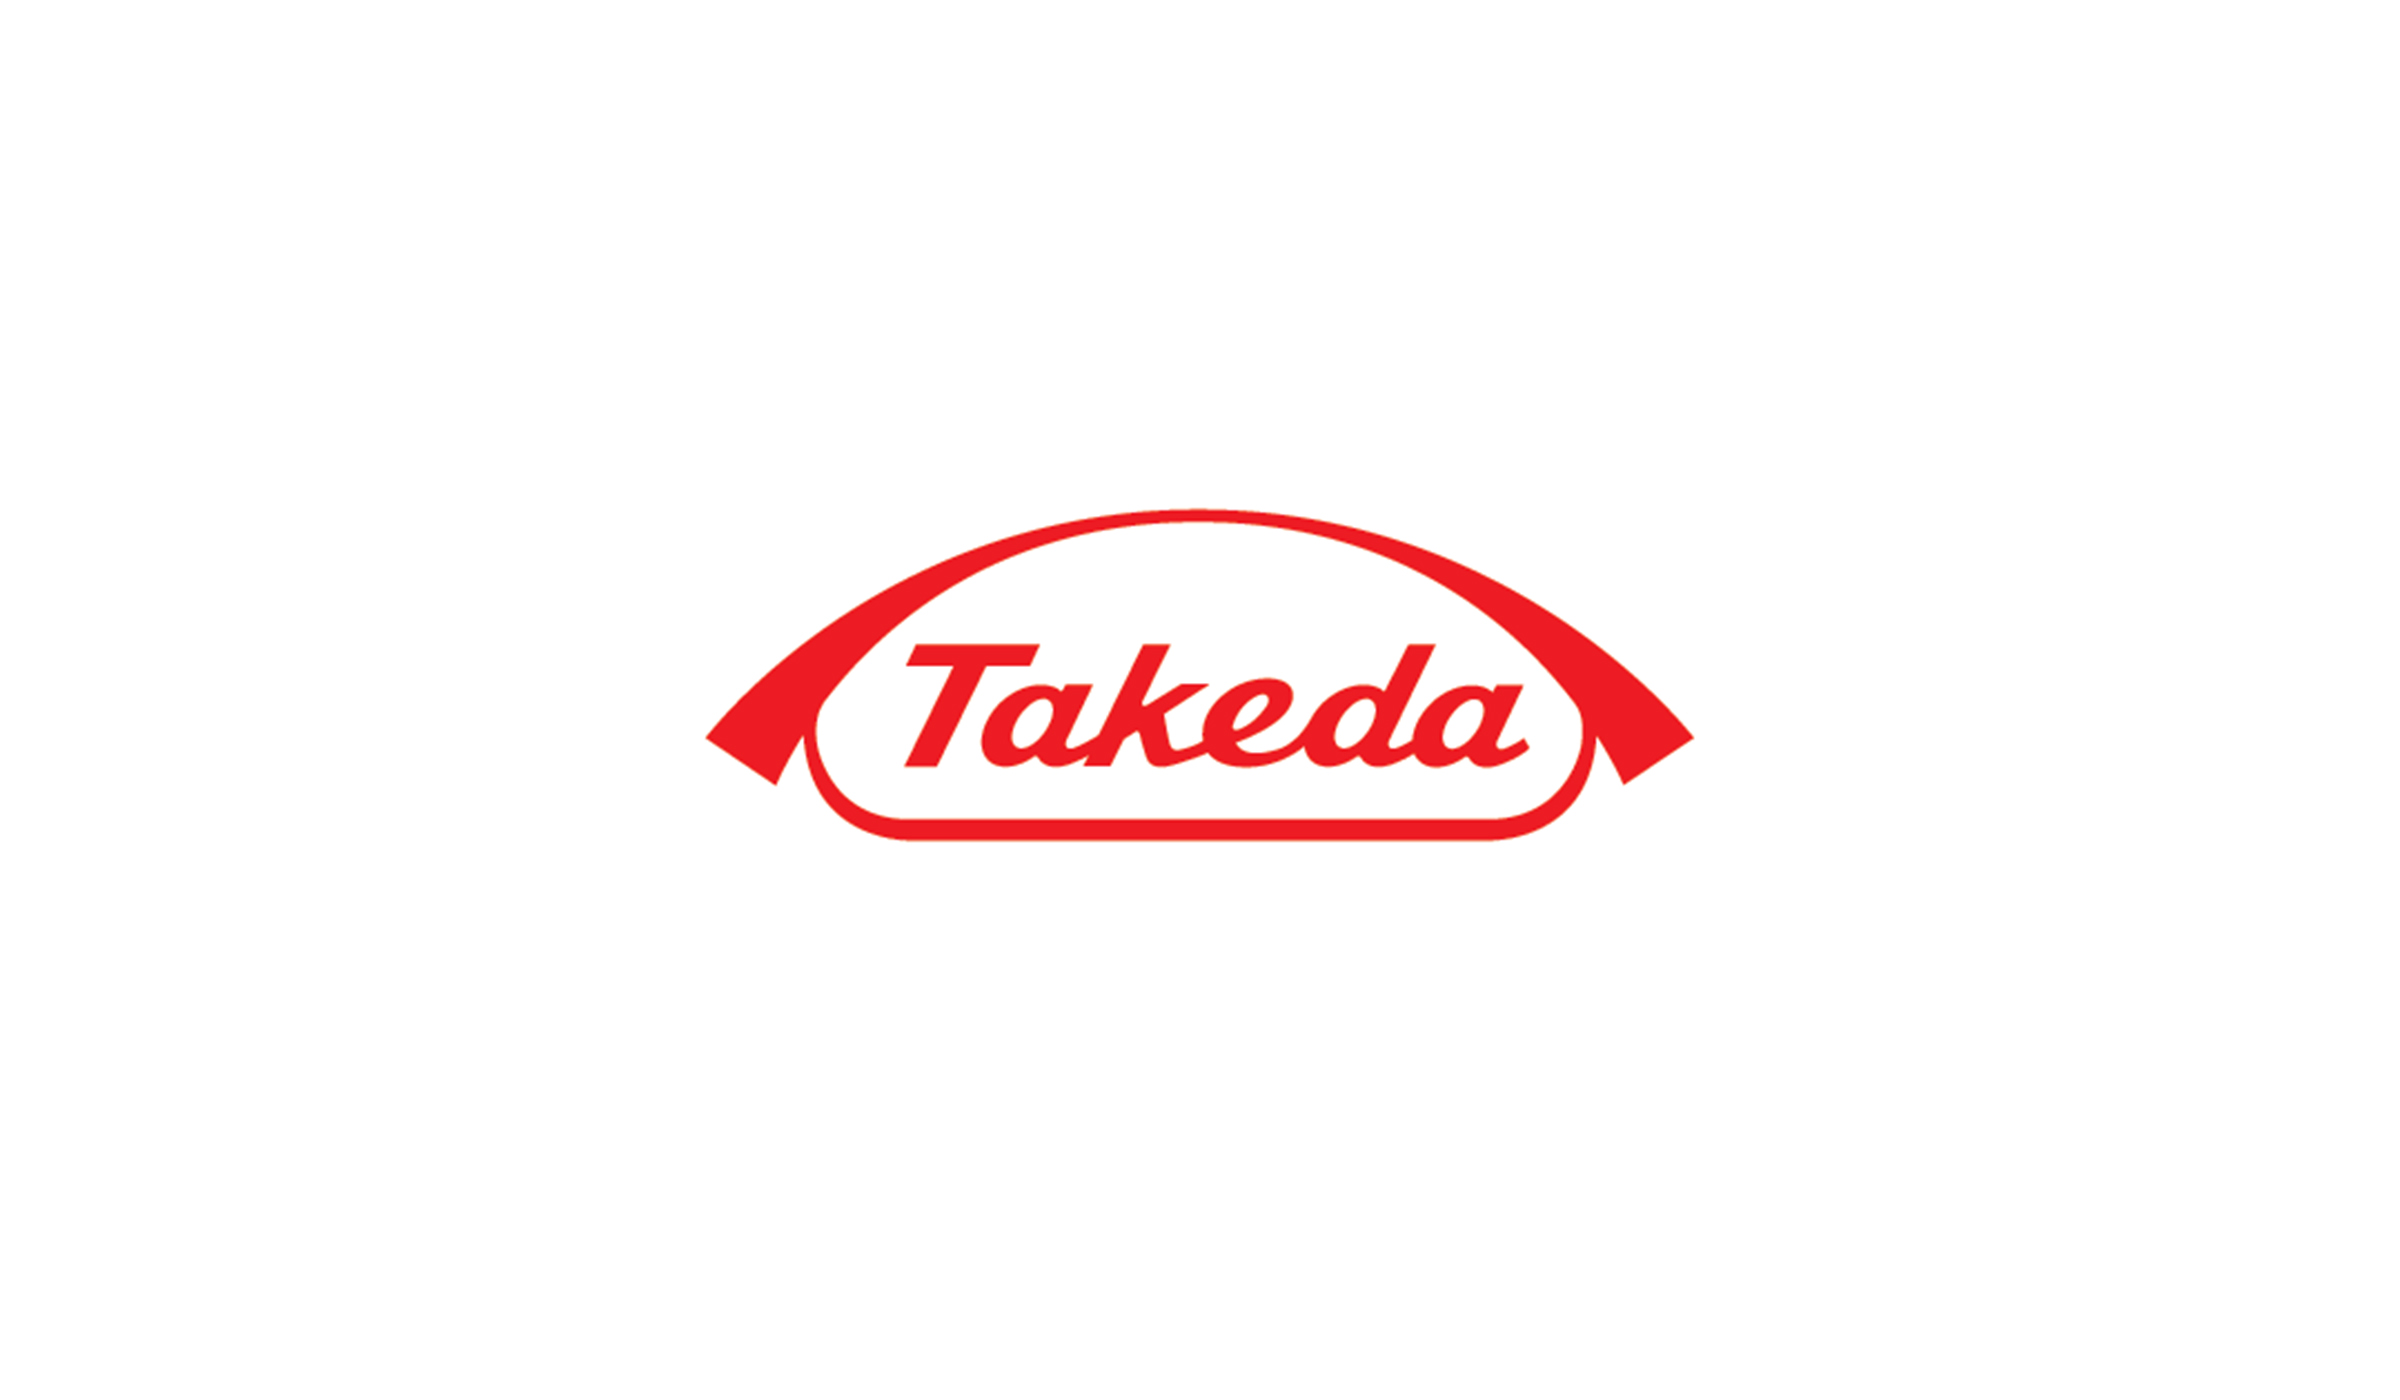 Takeda Joins as Sponsor of the 2021 Pan-Mass Challenge